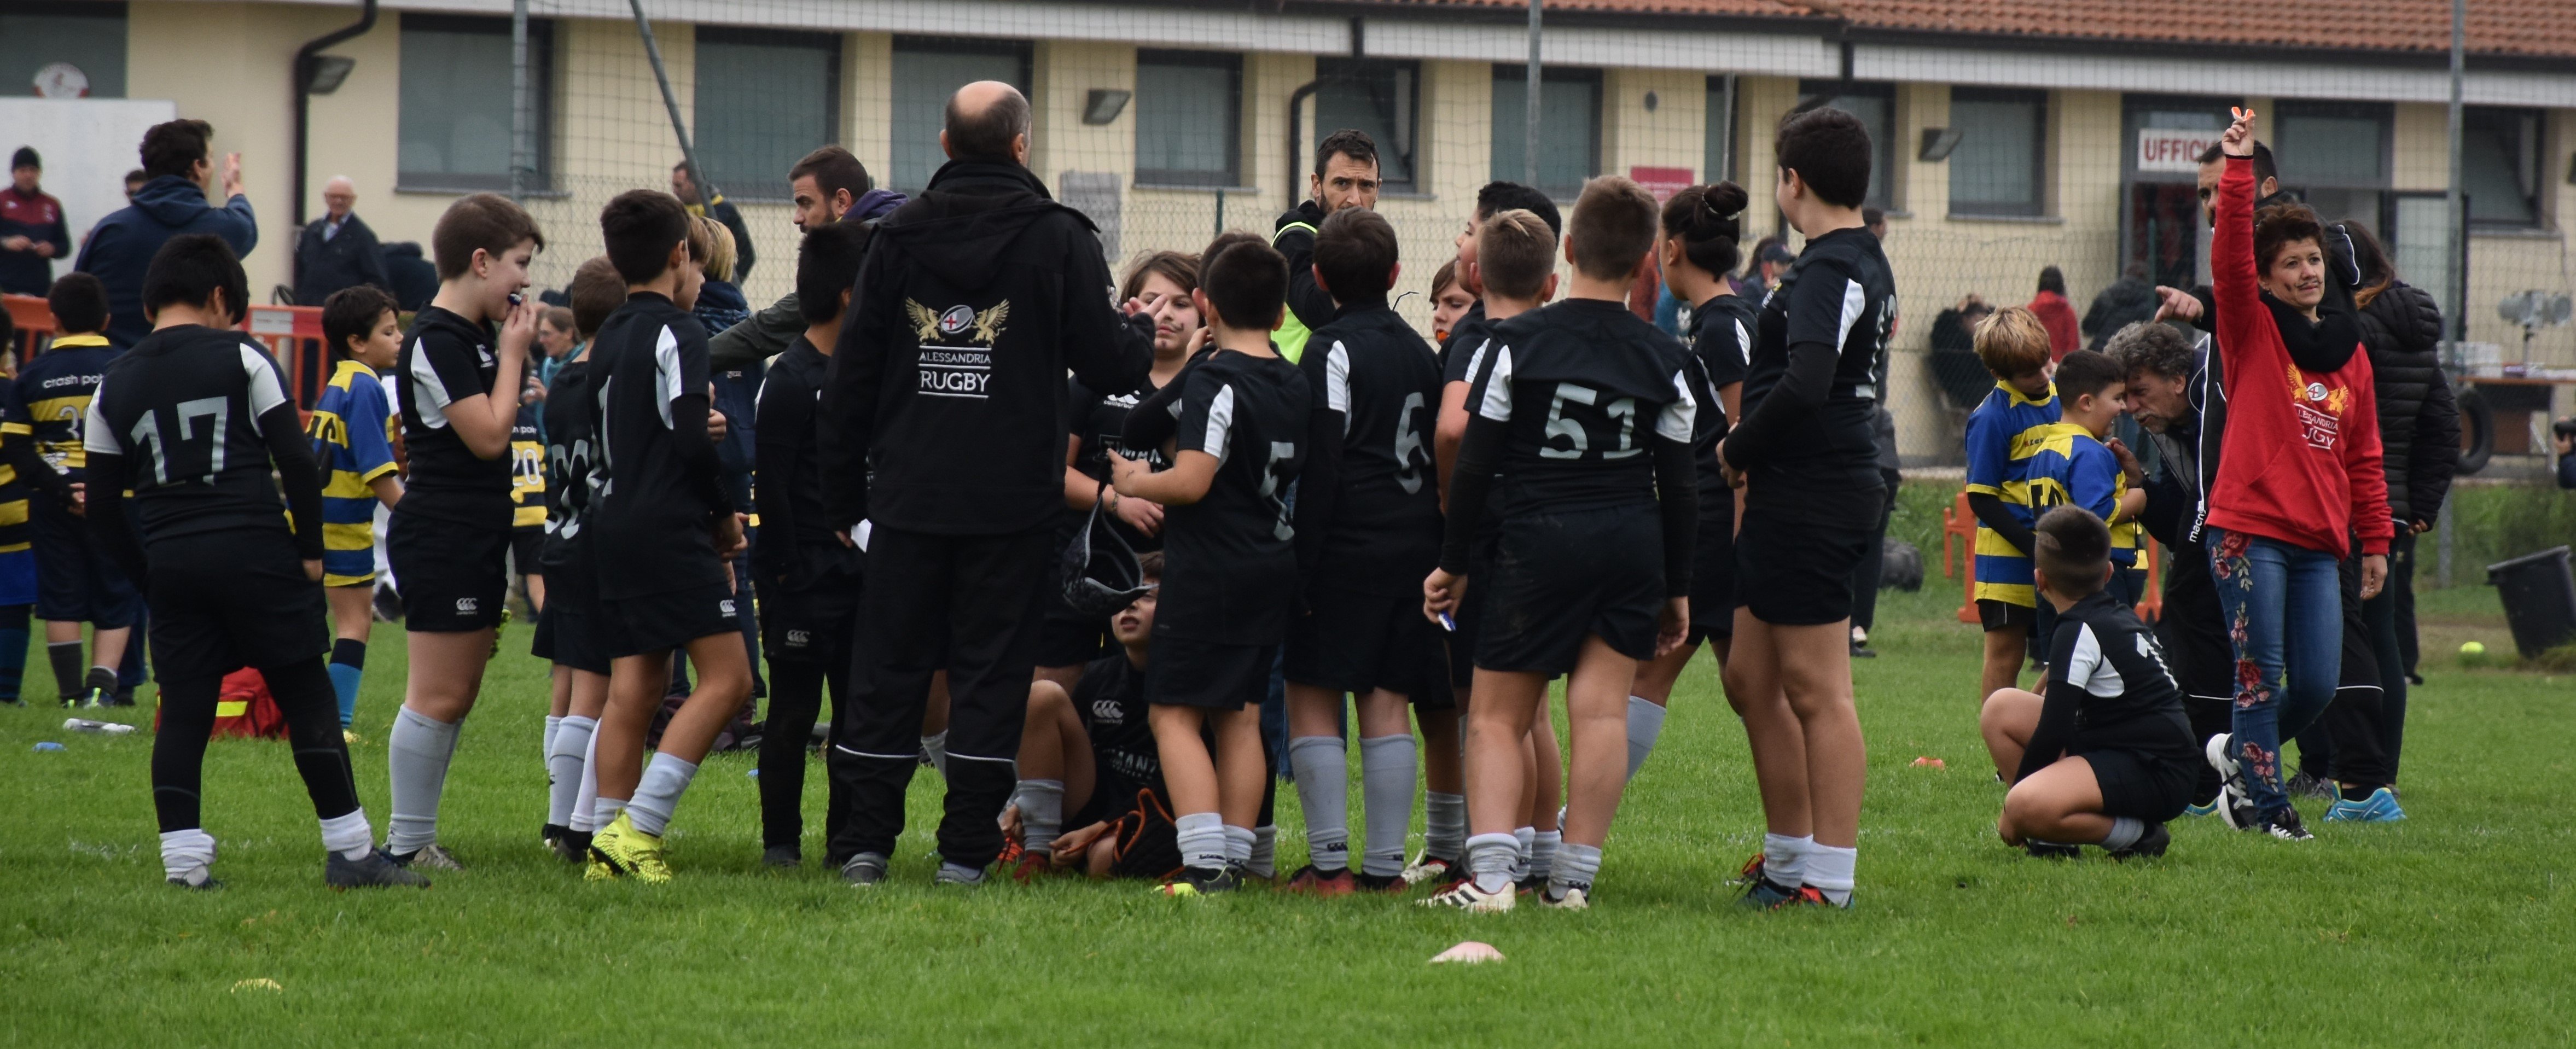 Alessandria Rugby: i risultati del vivaio al Torneo del Tartufo